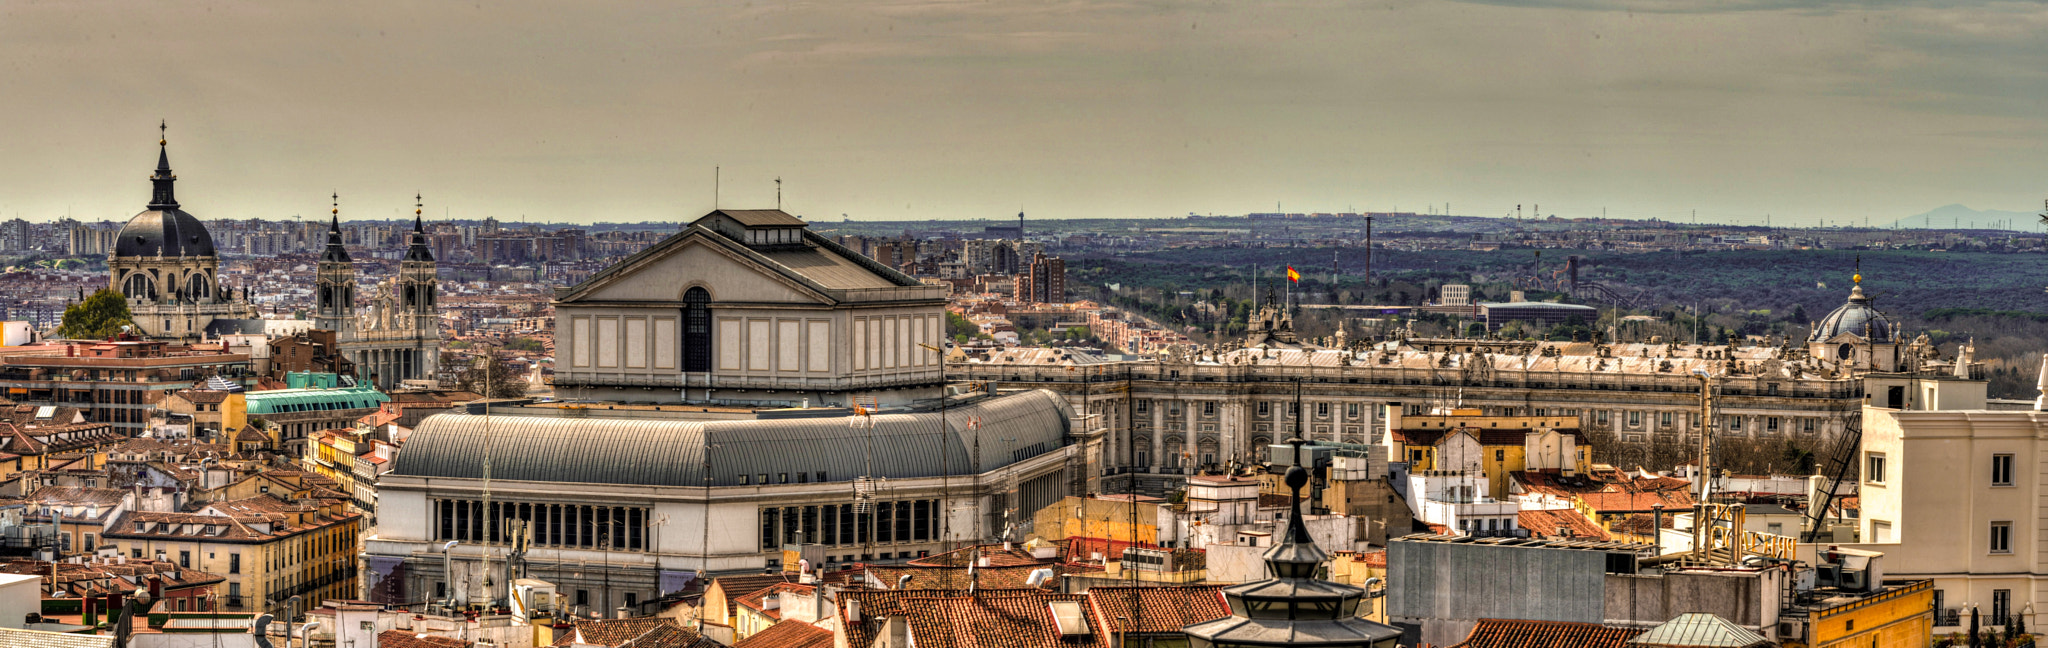 Monumentos y tejados de Madrid